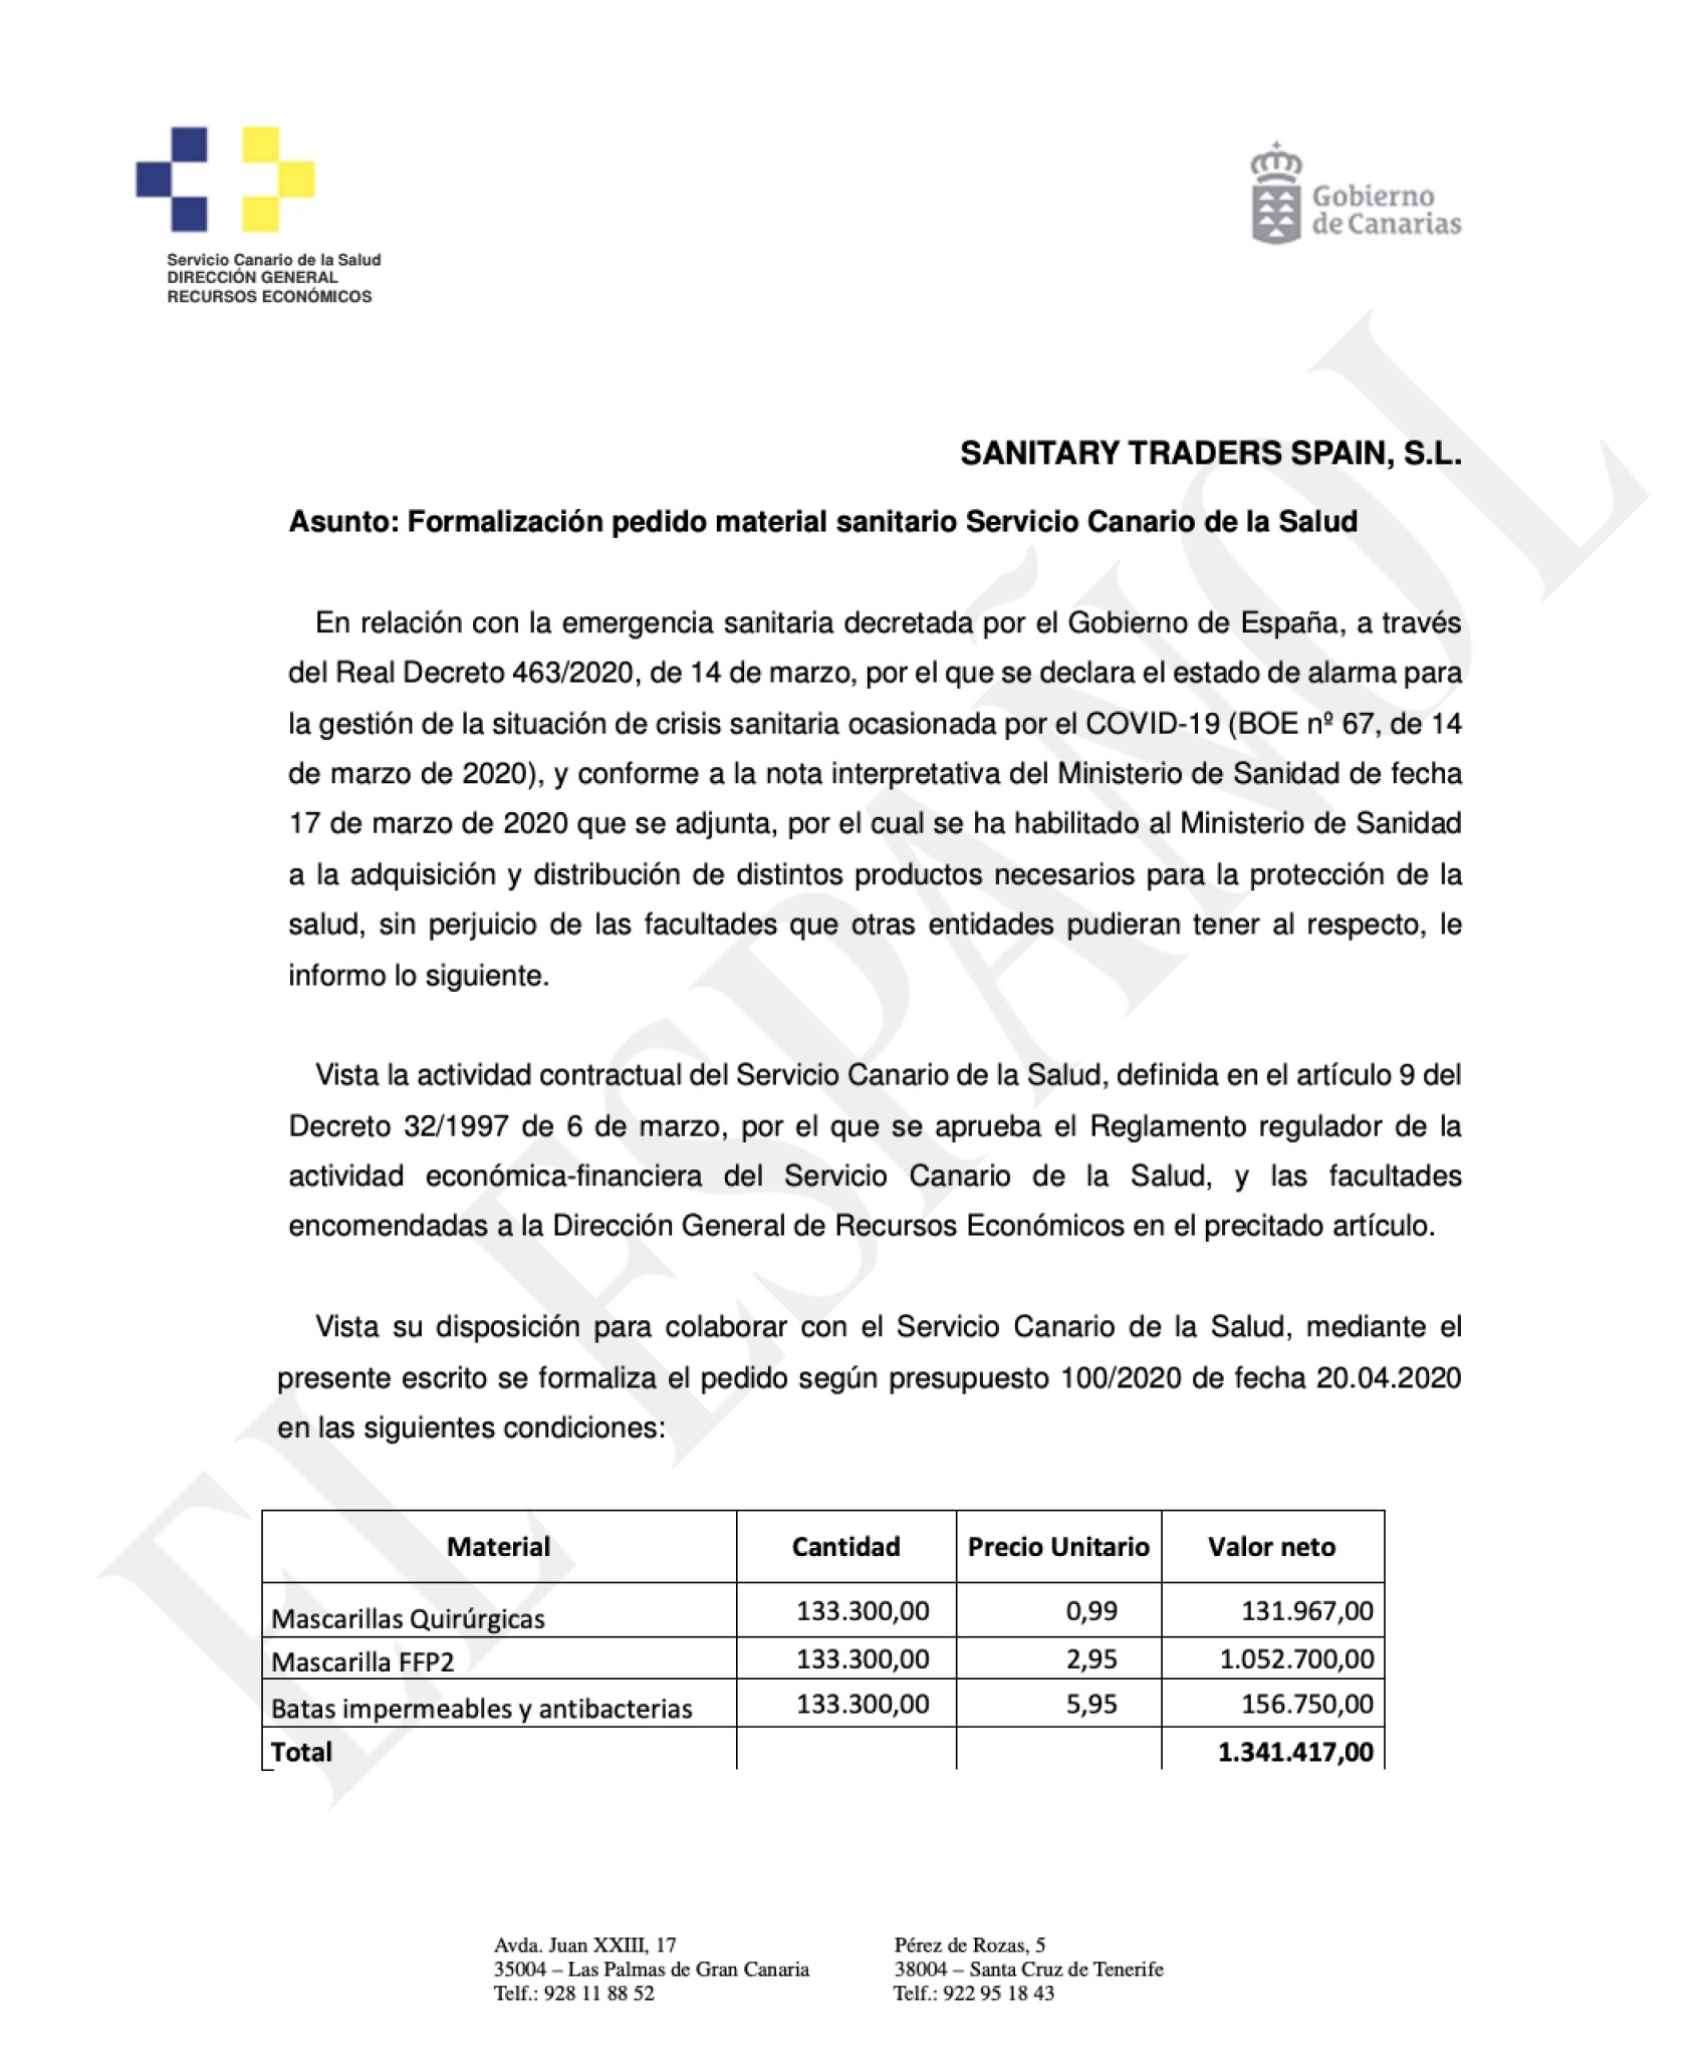 Documento del Gobierno de Canarias para la formalización del pedido realizado por el Servicio Canario de Salud a Central de Sanitary Traders Spain SL.